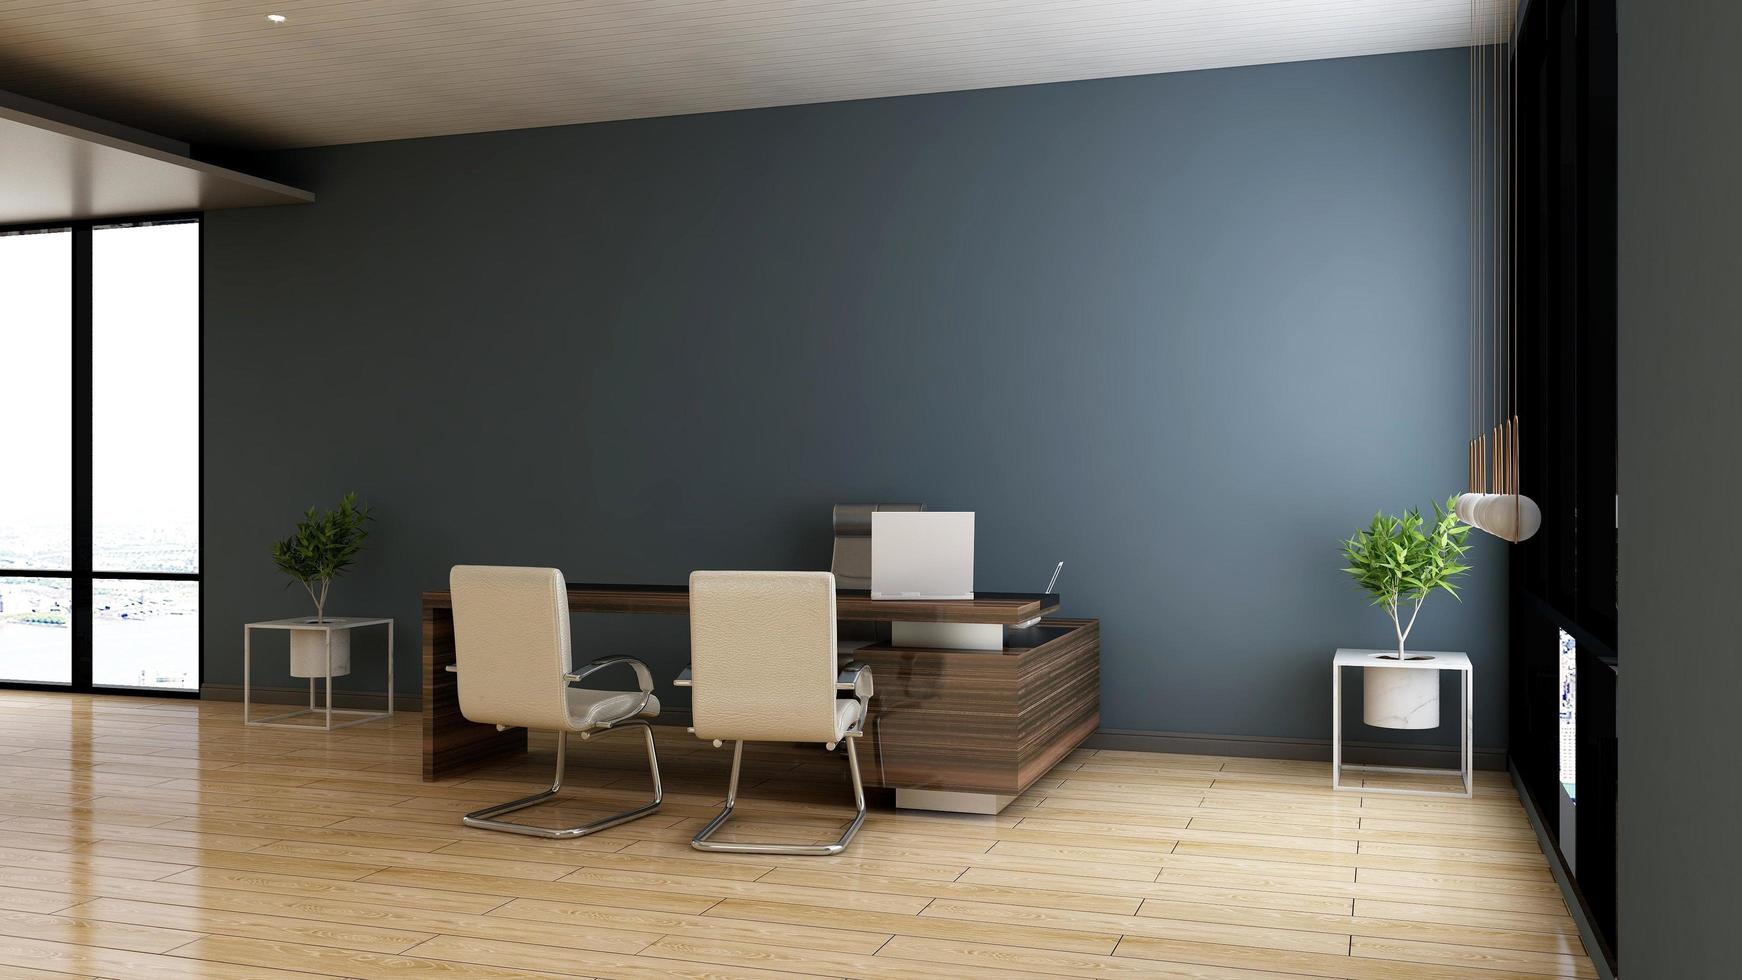 3d rendono la stanza minimalista dell'ufficio con interni di design in legno foto